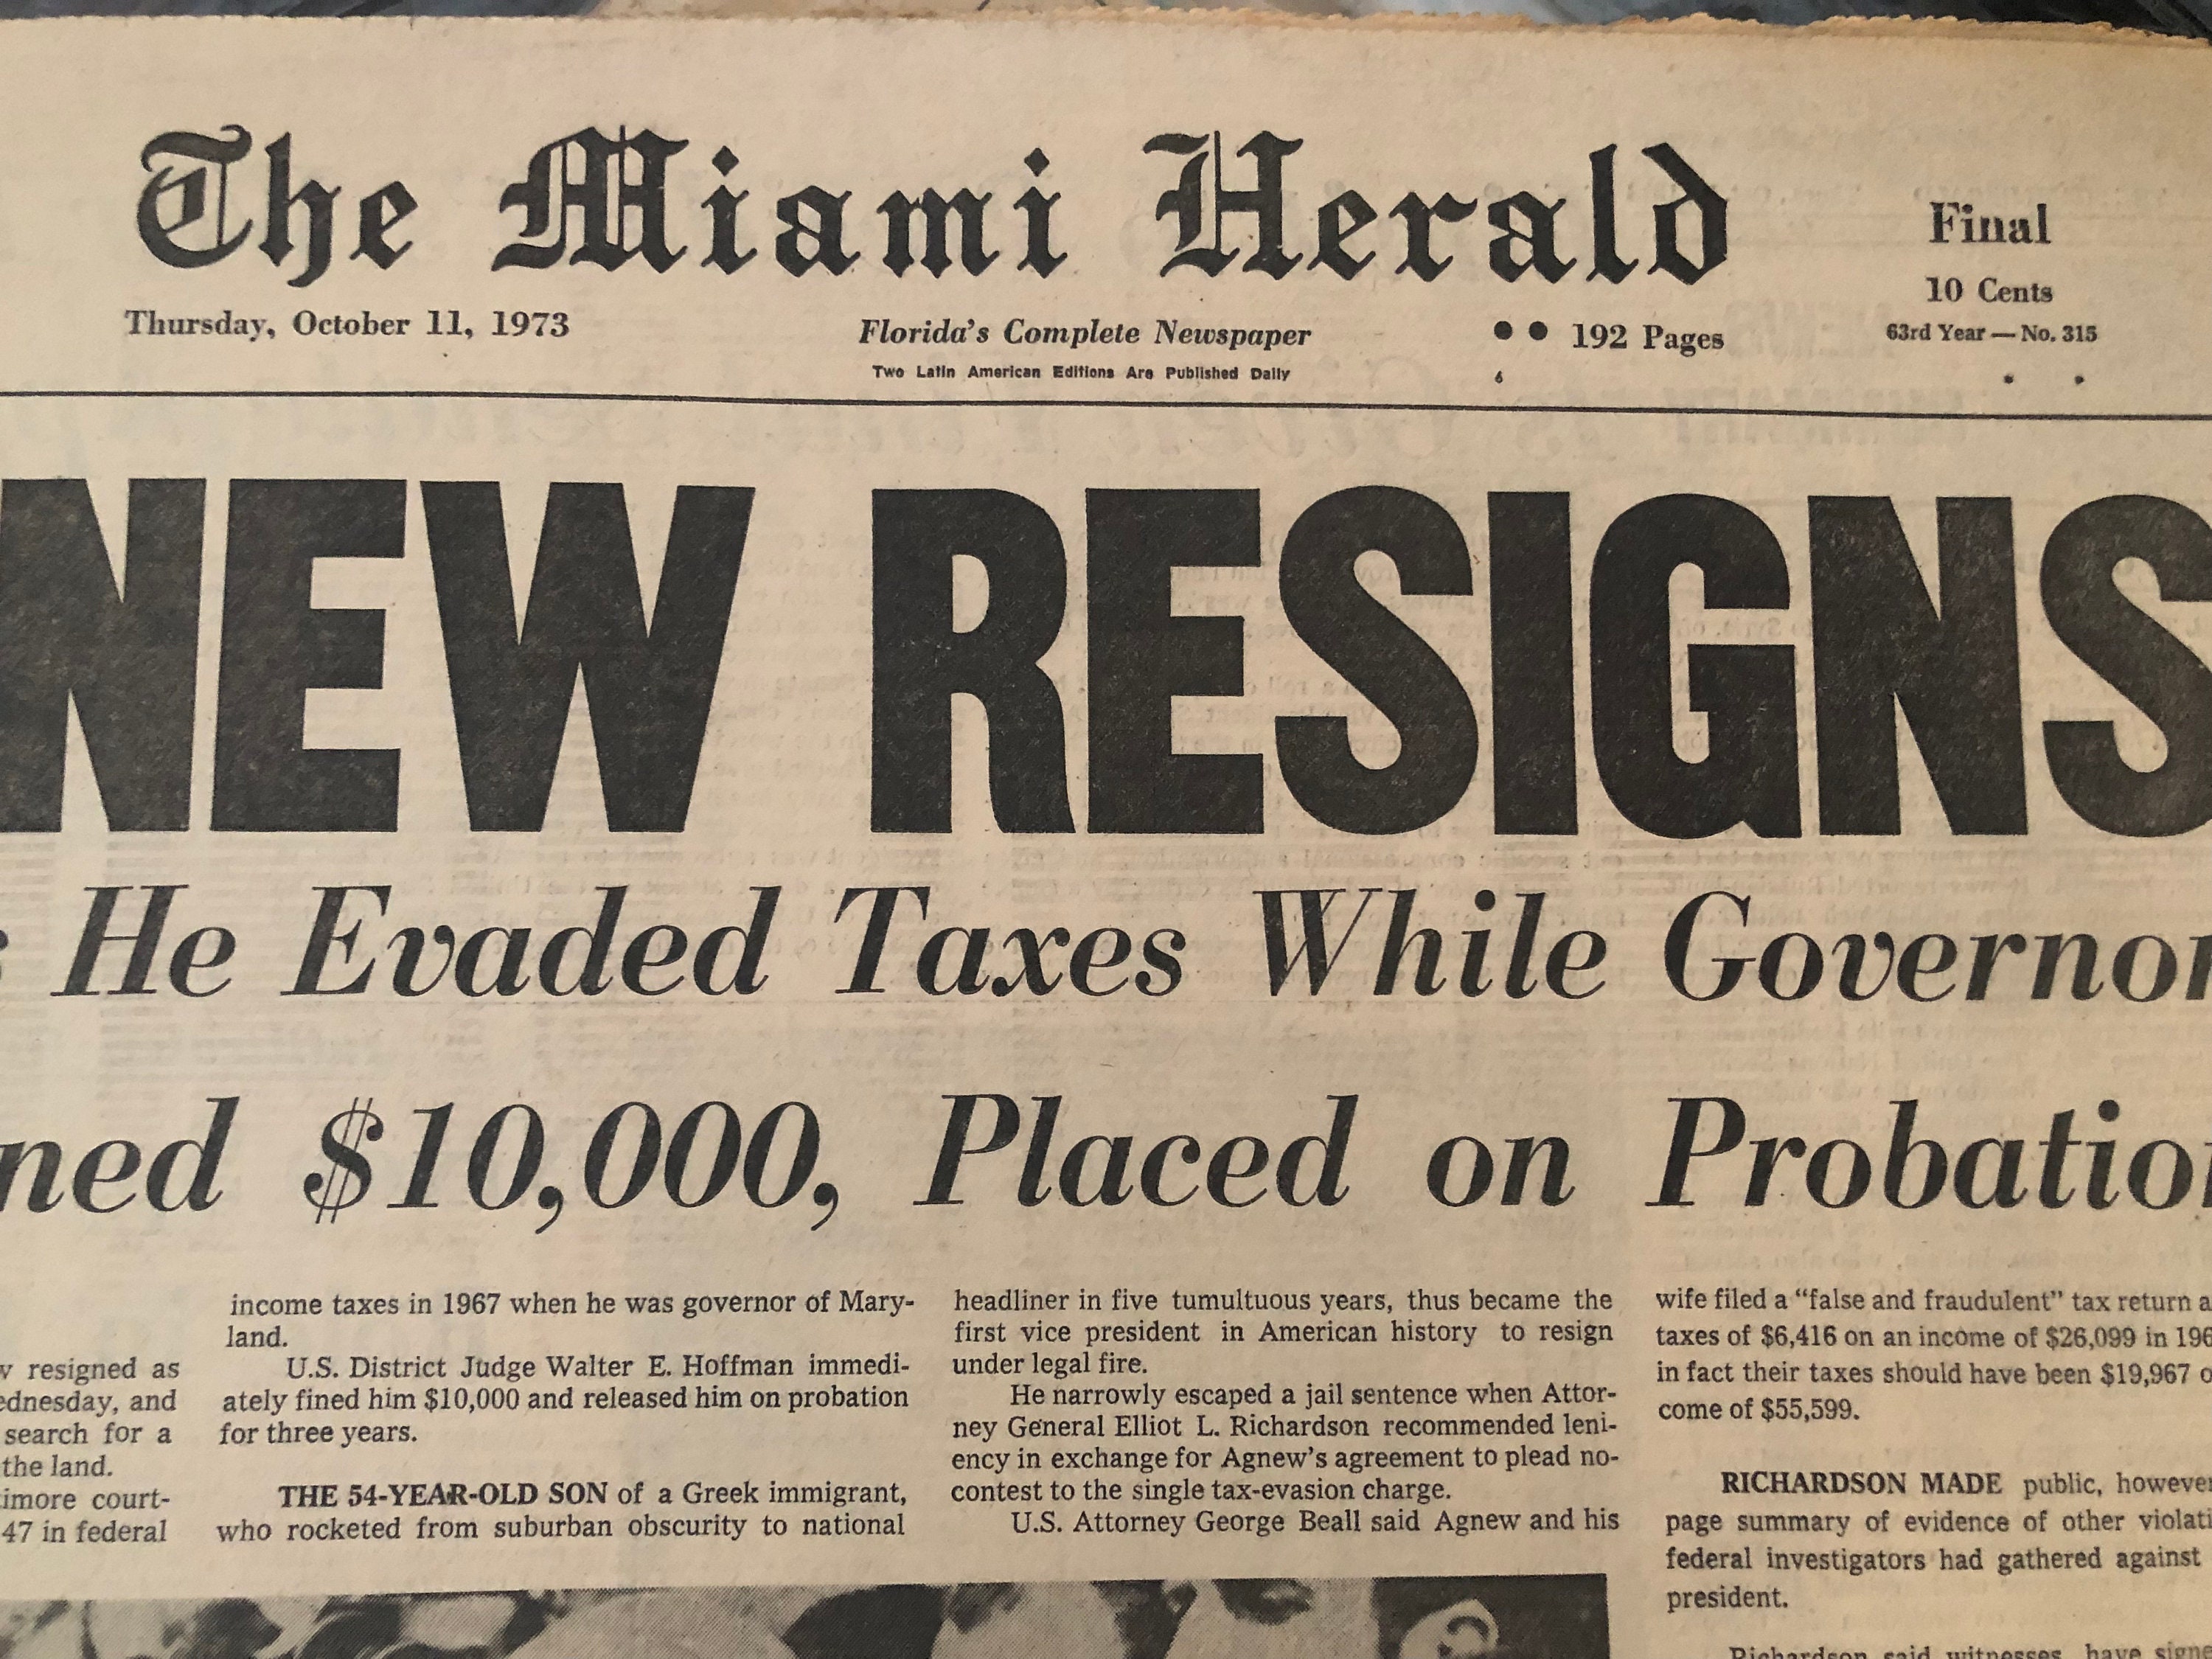 Miami gazette [1923-11-07 through 1924-03-05] - Magazines